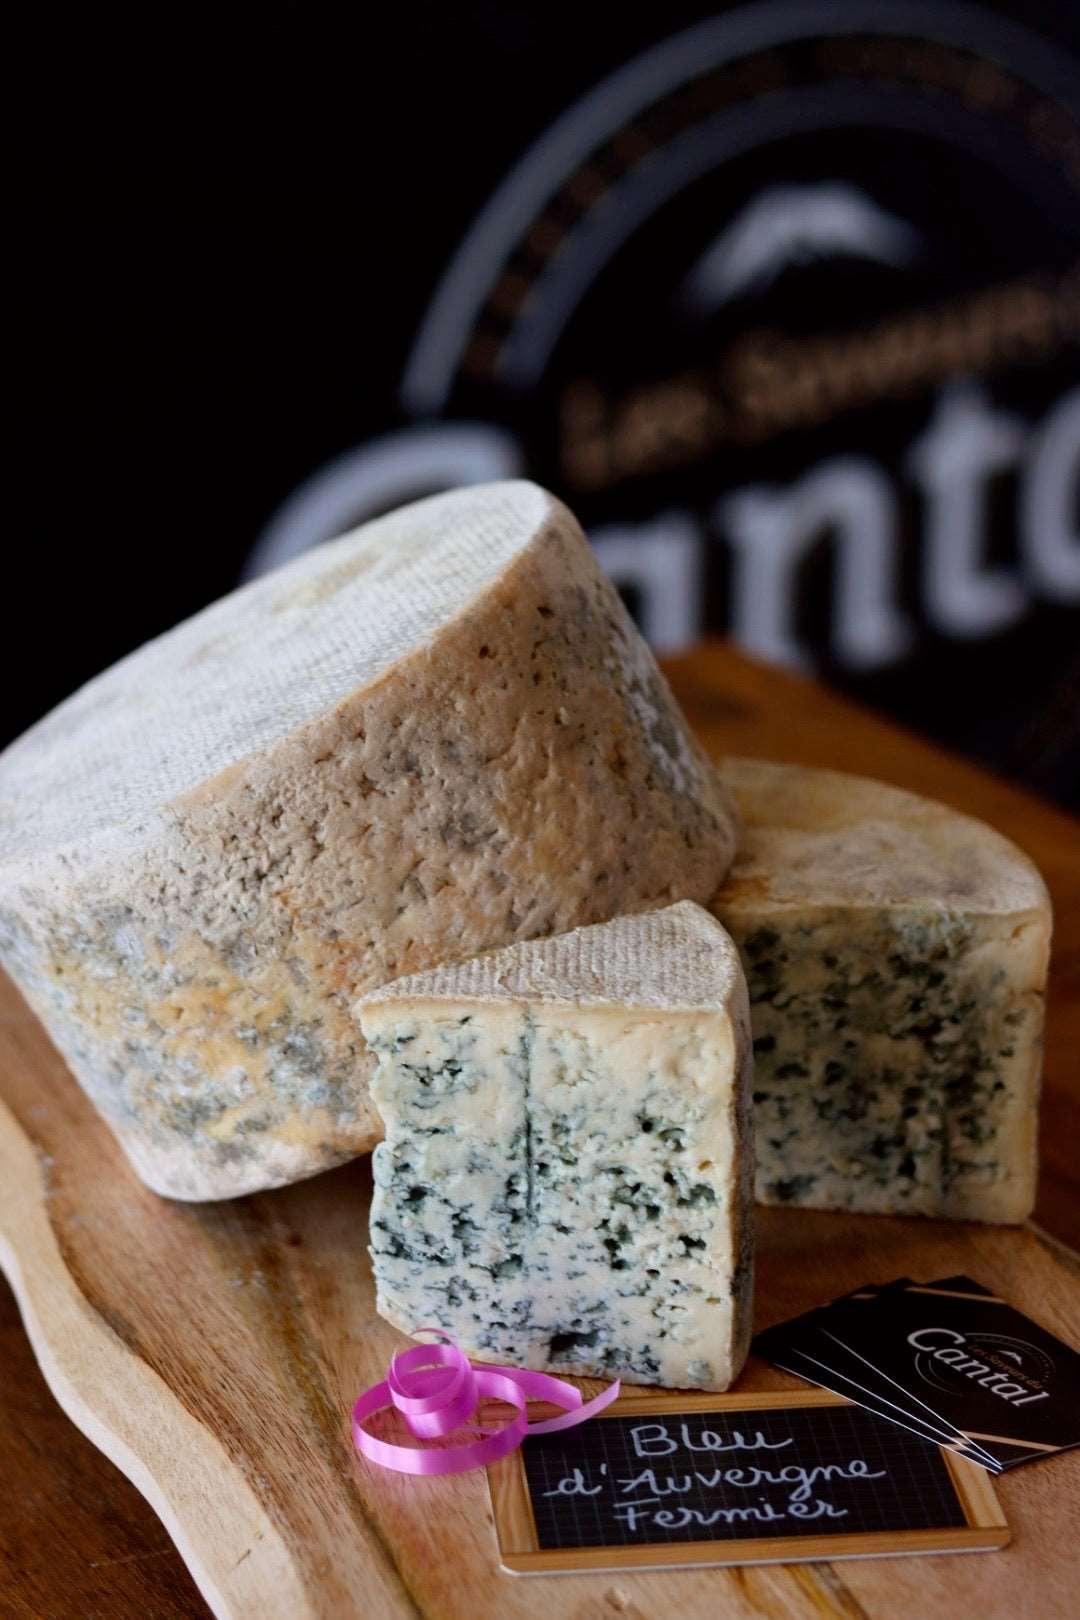 Le bleu d'Auvergne est un fromage au lait de vache à pâte persillée originaire de la région d'Auvergne en France. Ce fromage à la texture crémeuse et au goût prononcé est reconnaissable à sa croûte naturelle grise et à ses veines de moisissure bleues. Le bleu d'Auvergne est idéal pour les amateurs de fromage forts et complexes, et peut être dégusté seul ou utilisé dans diverses recettes culinaires pour ajouter une touche de saveur et d'originalité.